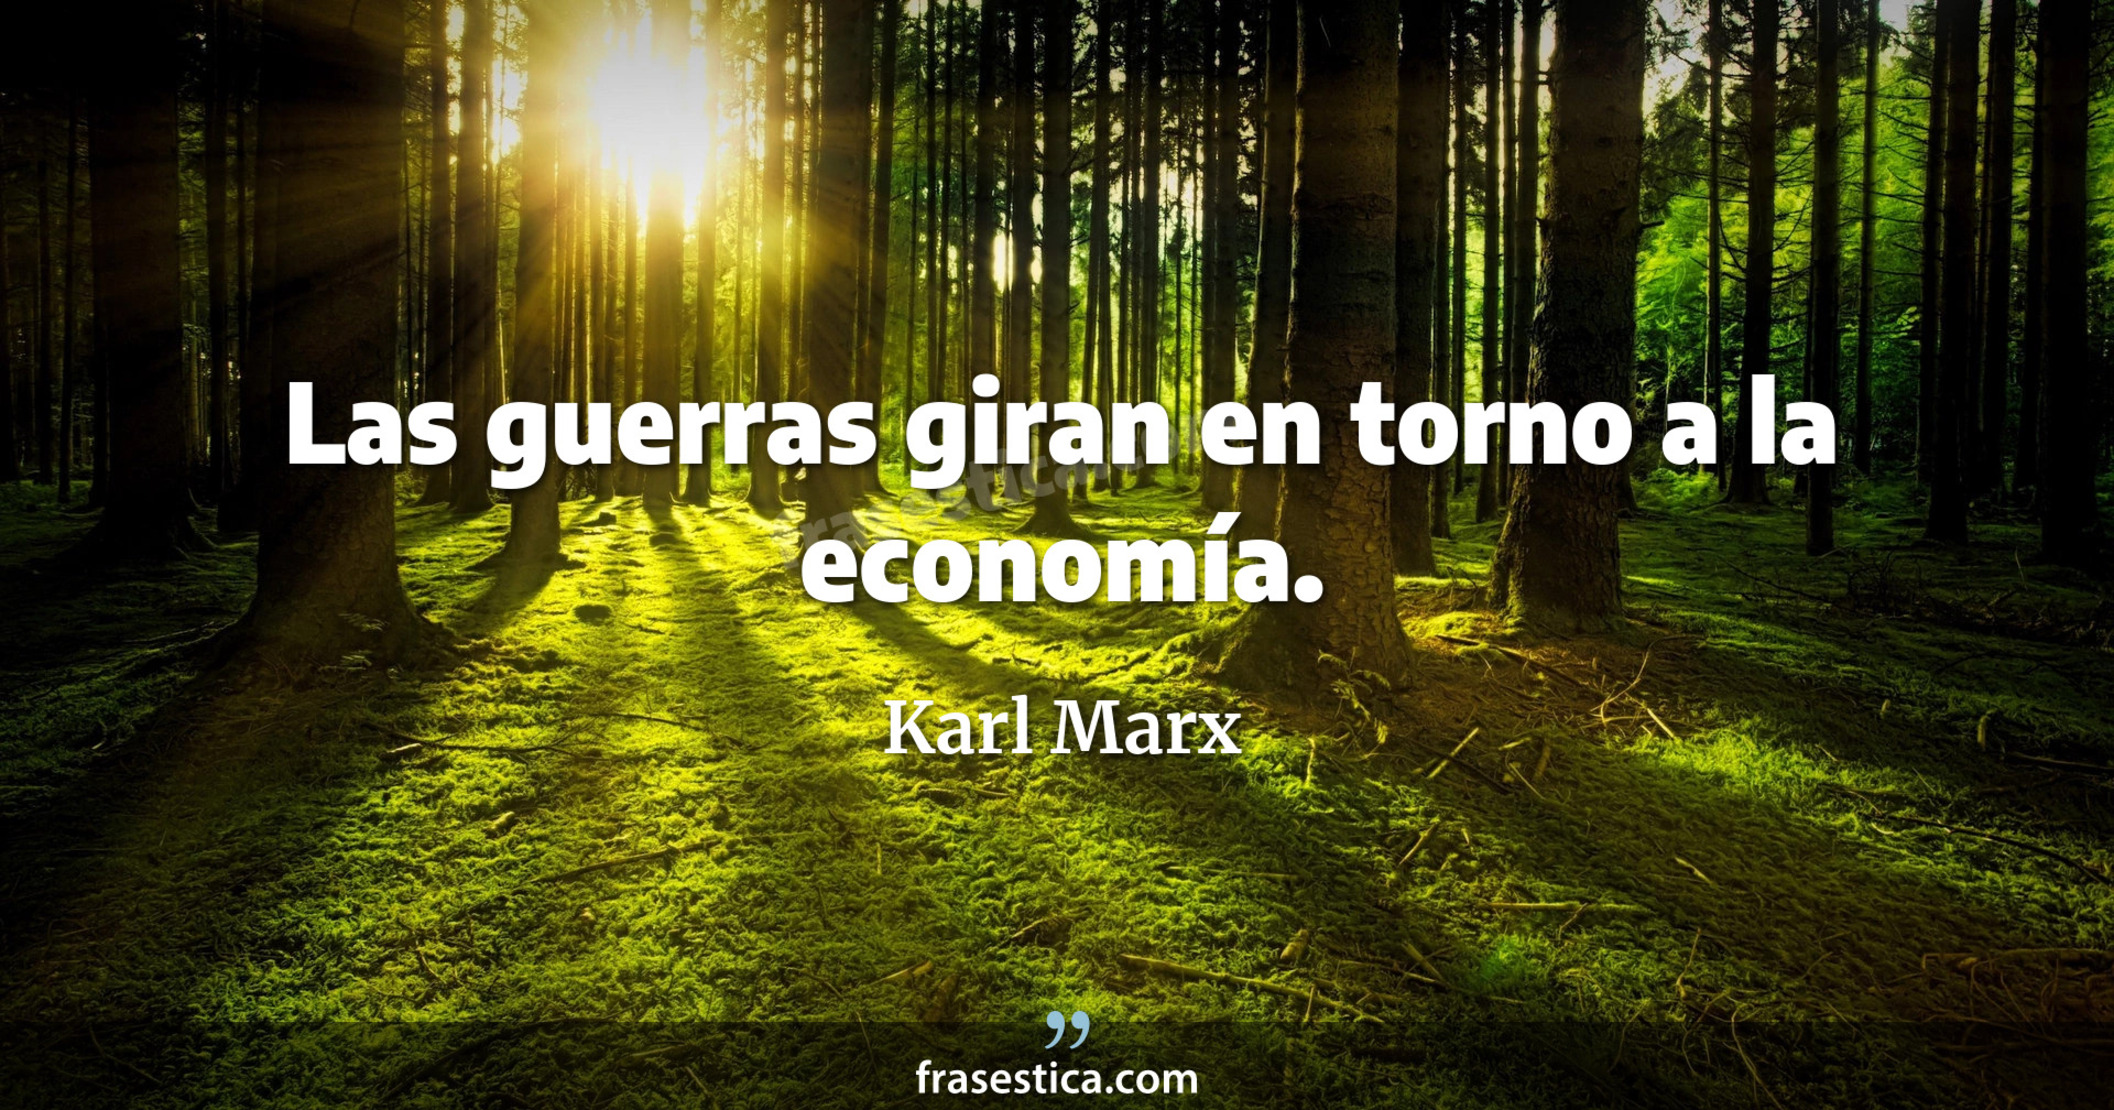 Las guerras giran en torno a la economía. - Karl Marx